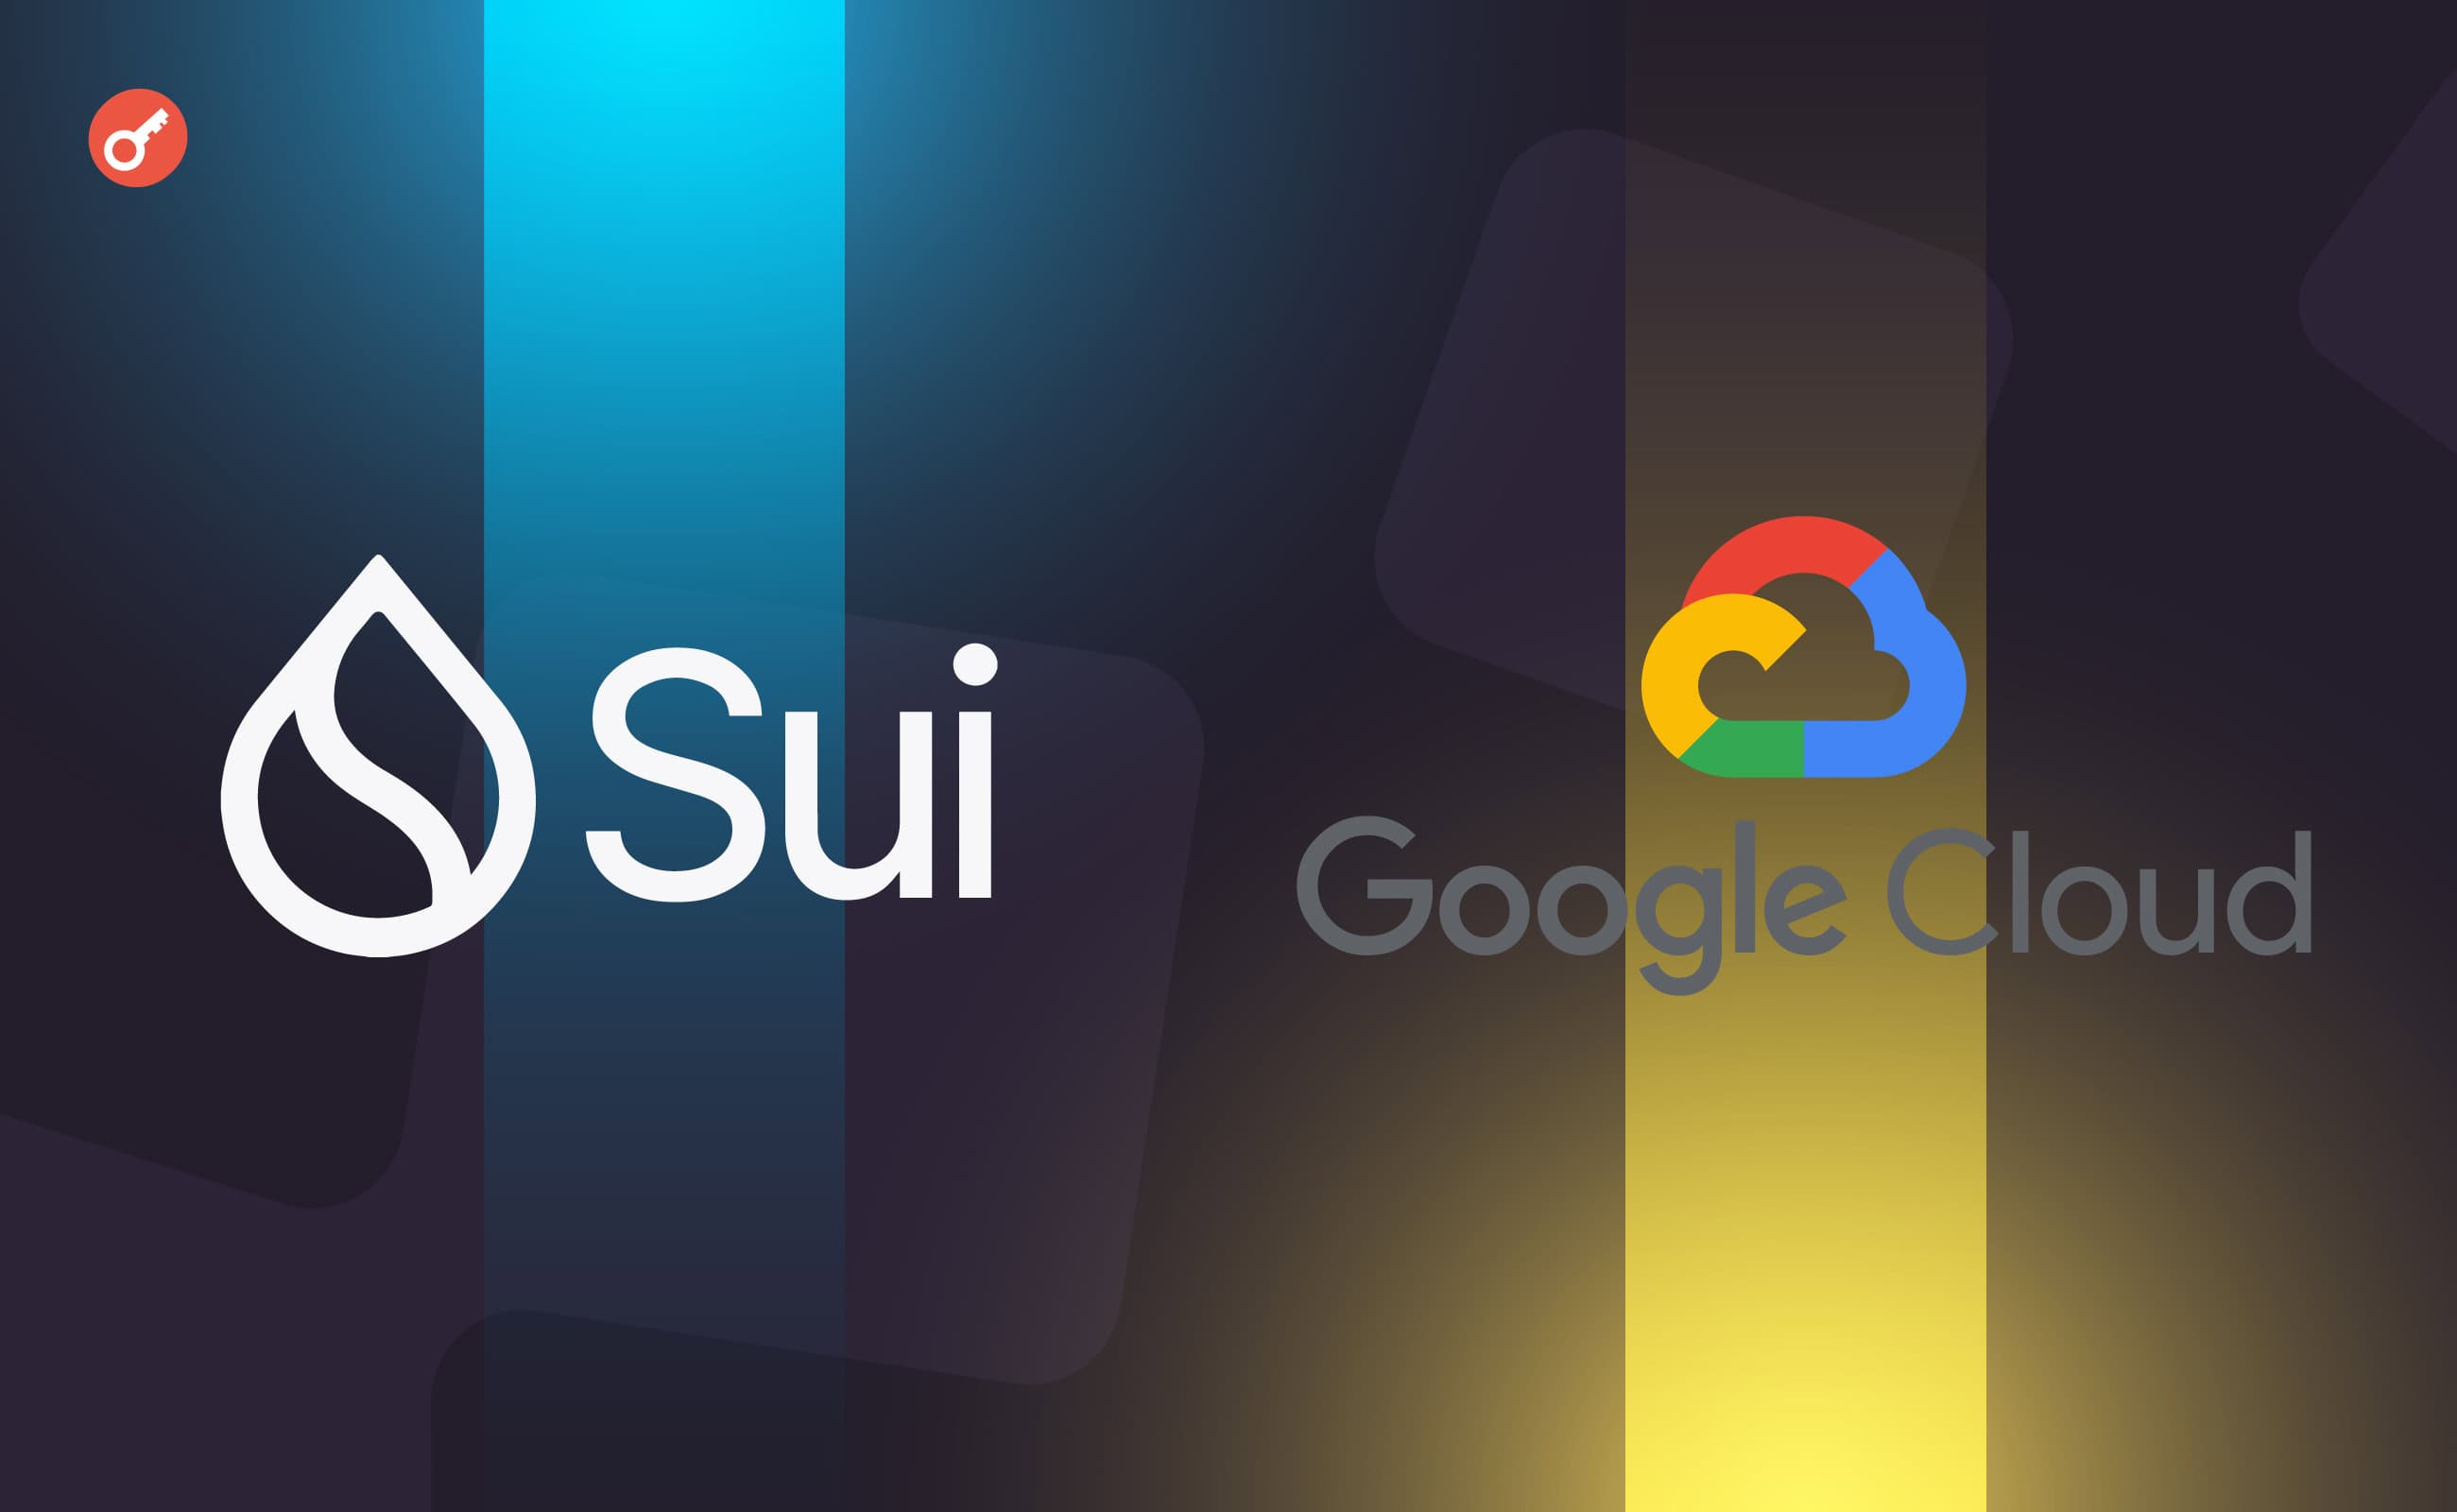 L1-блокчейн Sui заключил партнерство с Google Cloud. Заглавный коллаж новости.